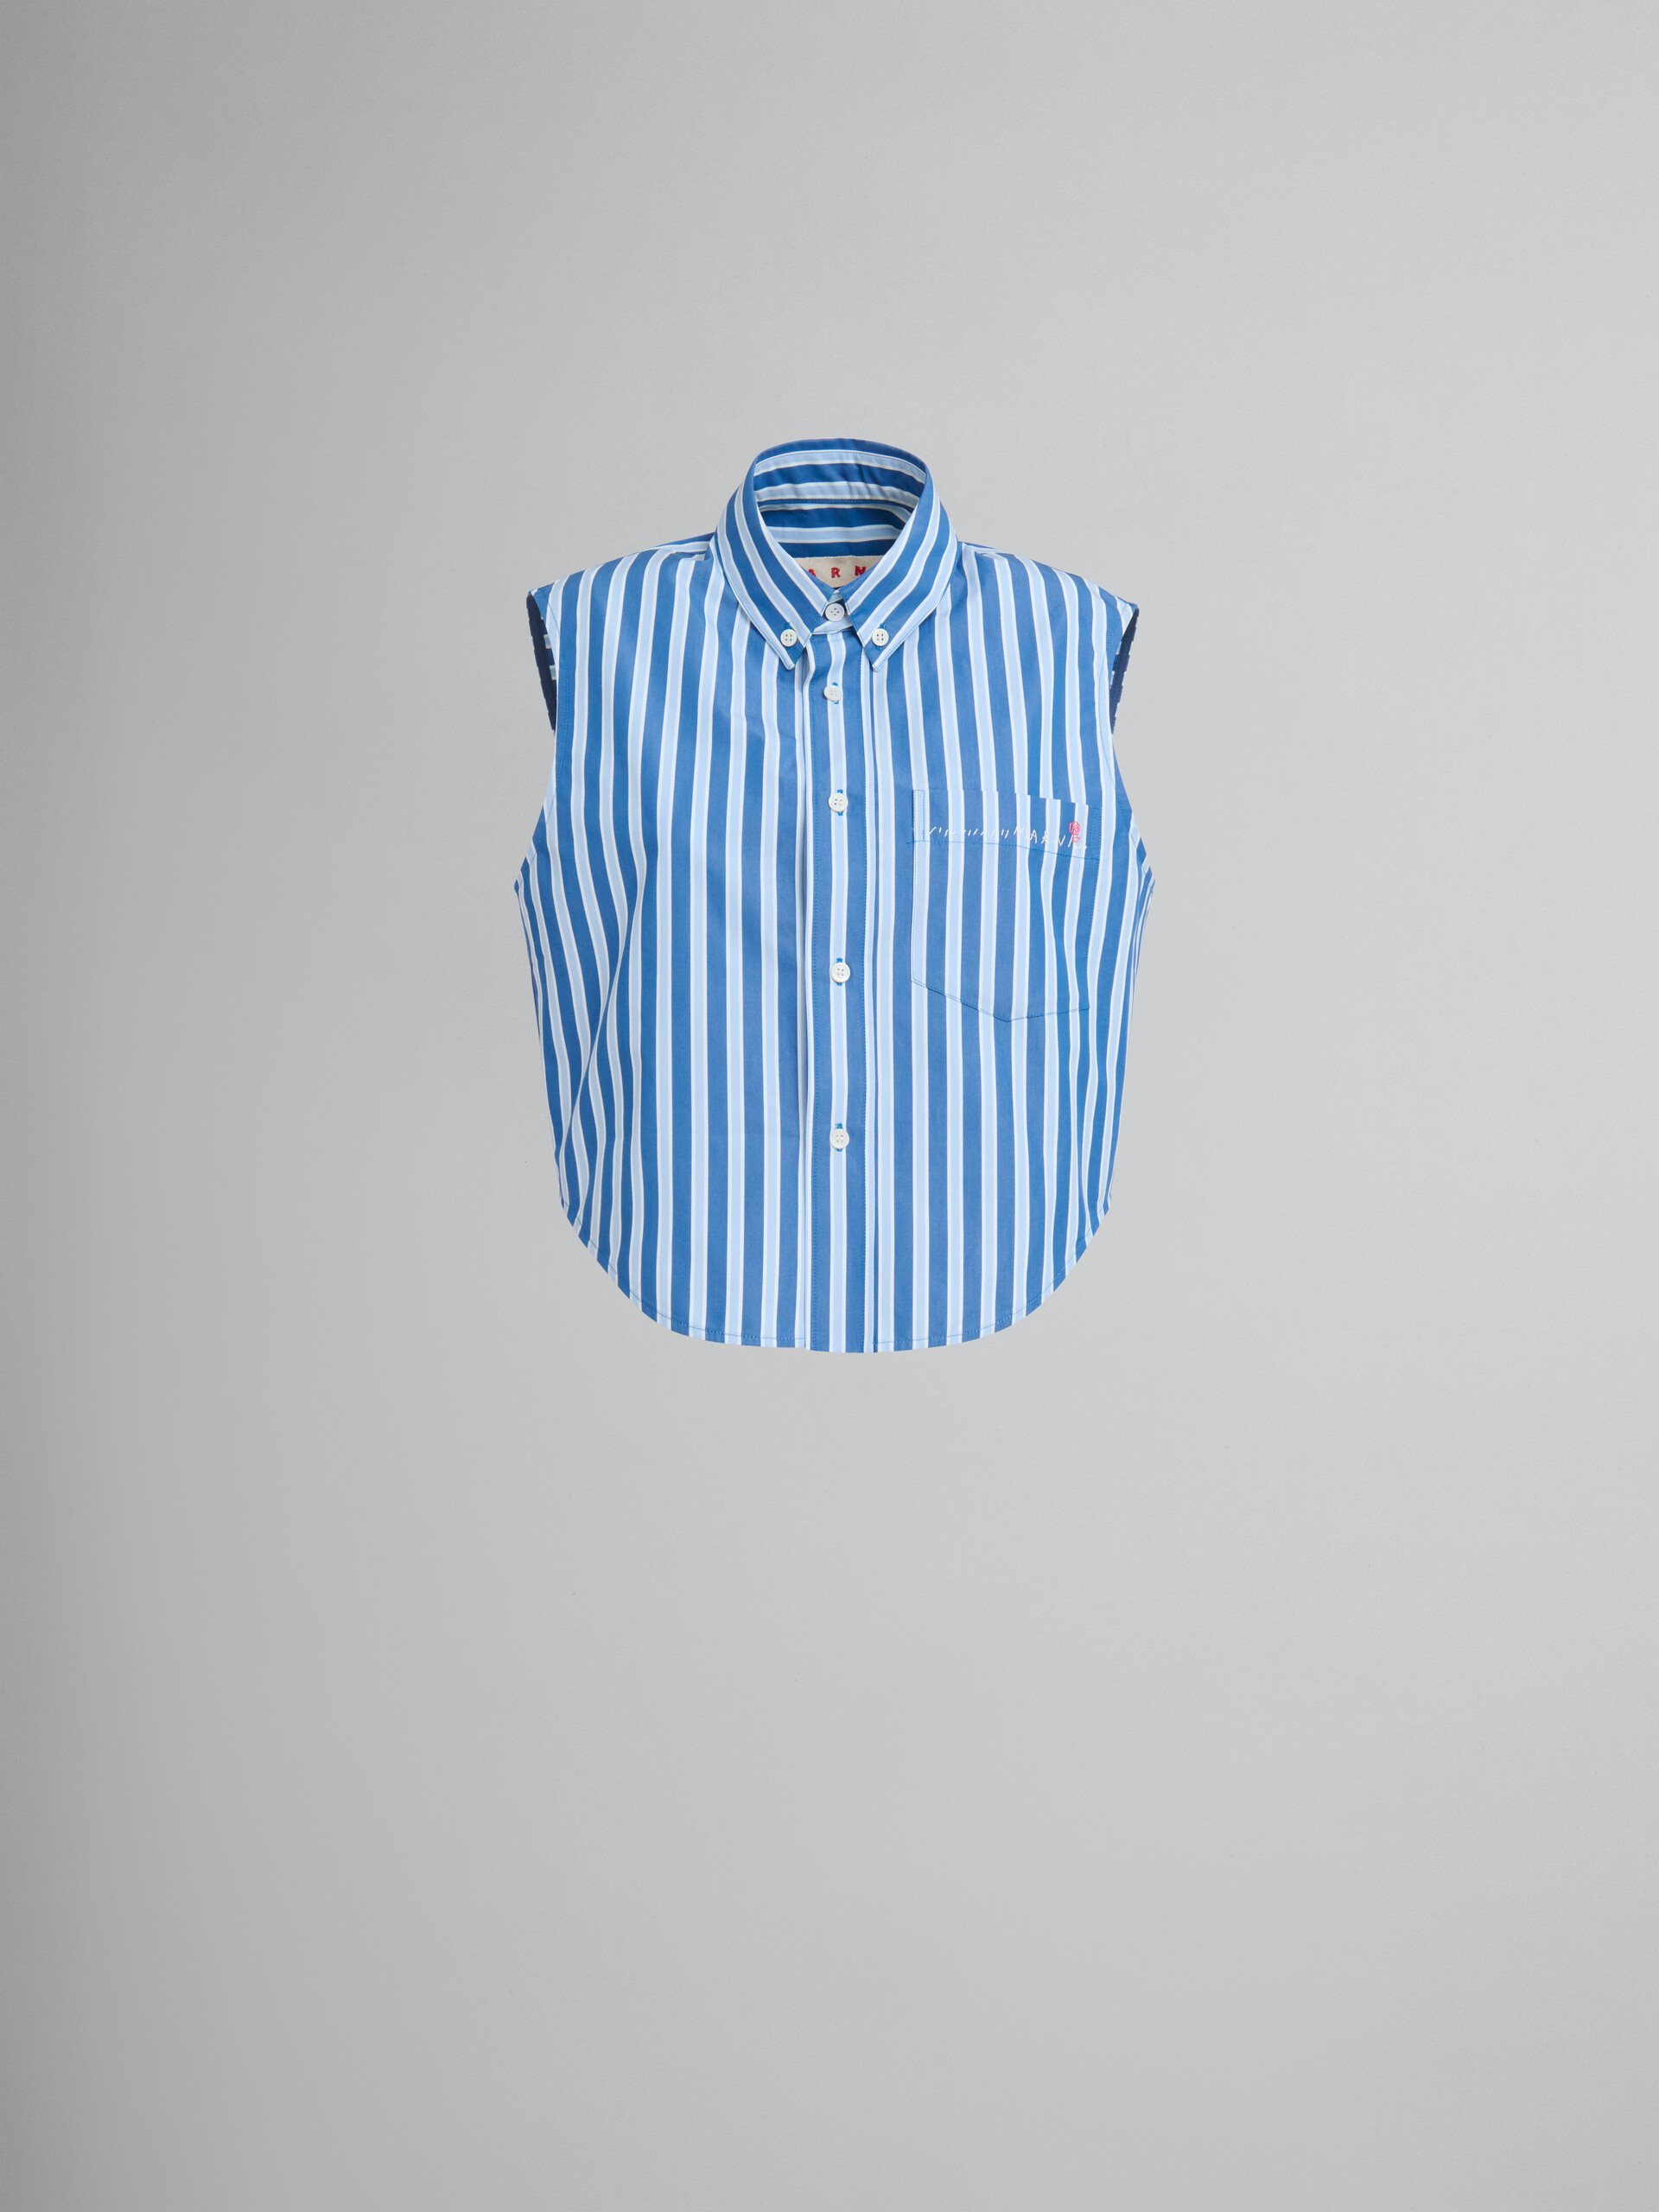 ブルー ホワイト ストライプオーガニックポプリン製 ノースリーブシャツ - シャツ - Image 1